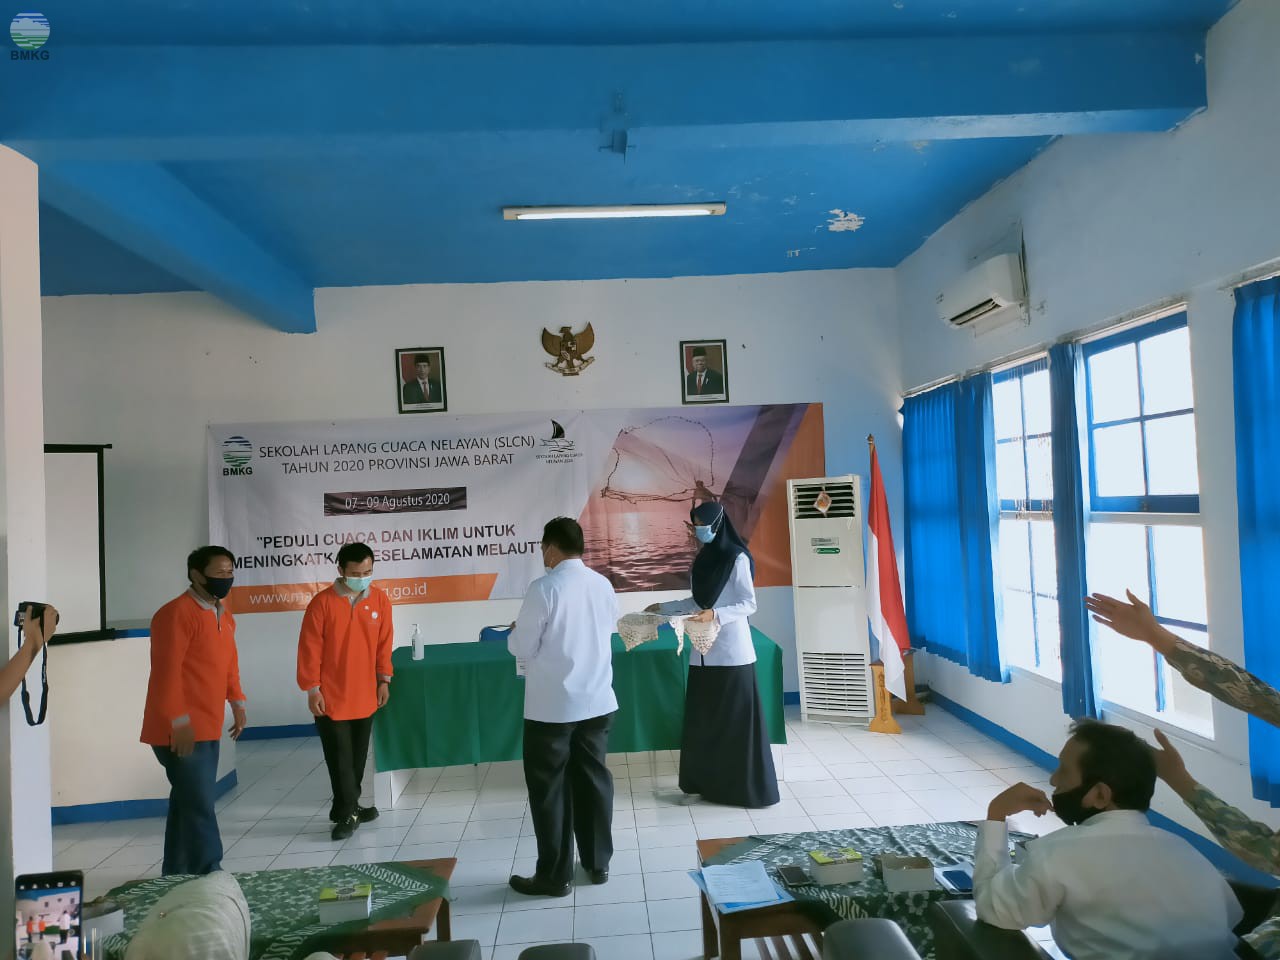 Sekolah Lapang Cuaca Nelayan Provinsi Jawa Barat Meningkatkan Keselamatan Melaut dan Kesejahteraan Nelayan